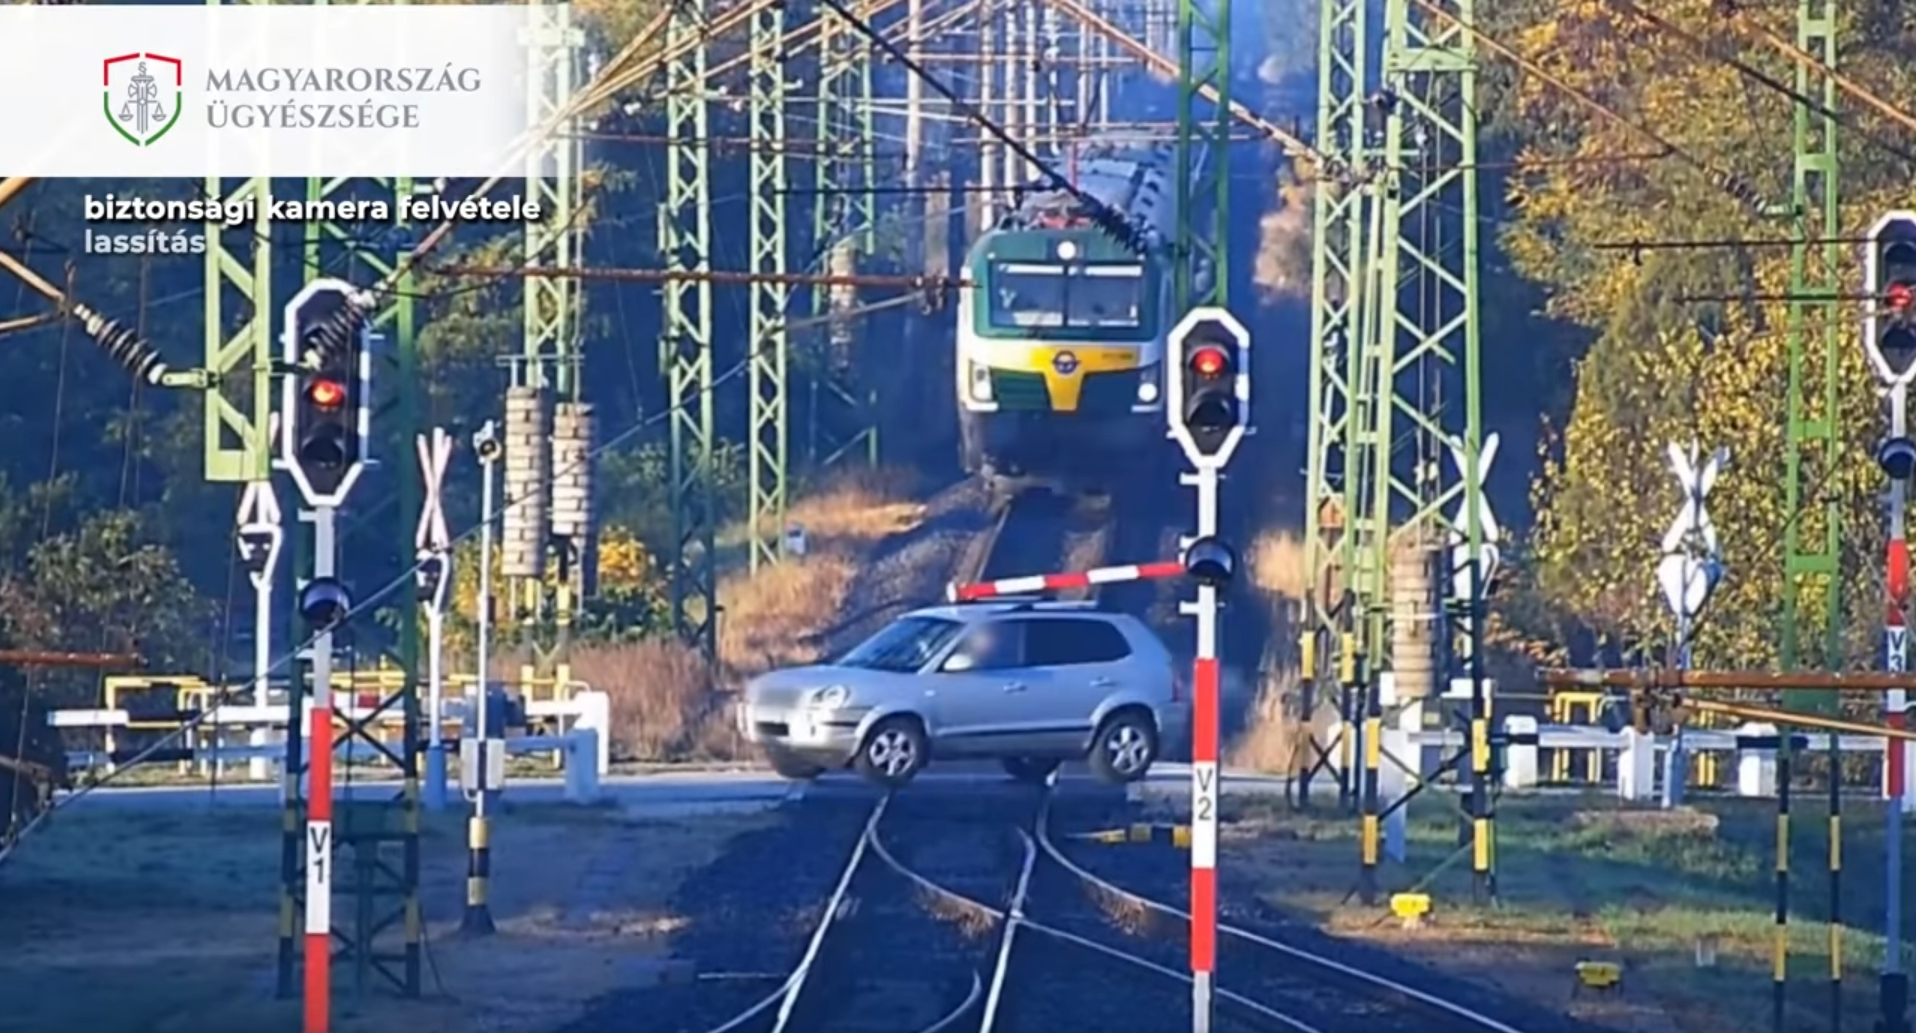 Magyarországon is rengeteg az útátjárós szabálysértés és baleset az elmúlt években (kép forrása: Magyarország Ügyészsége)